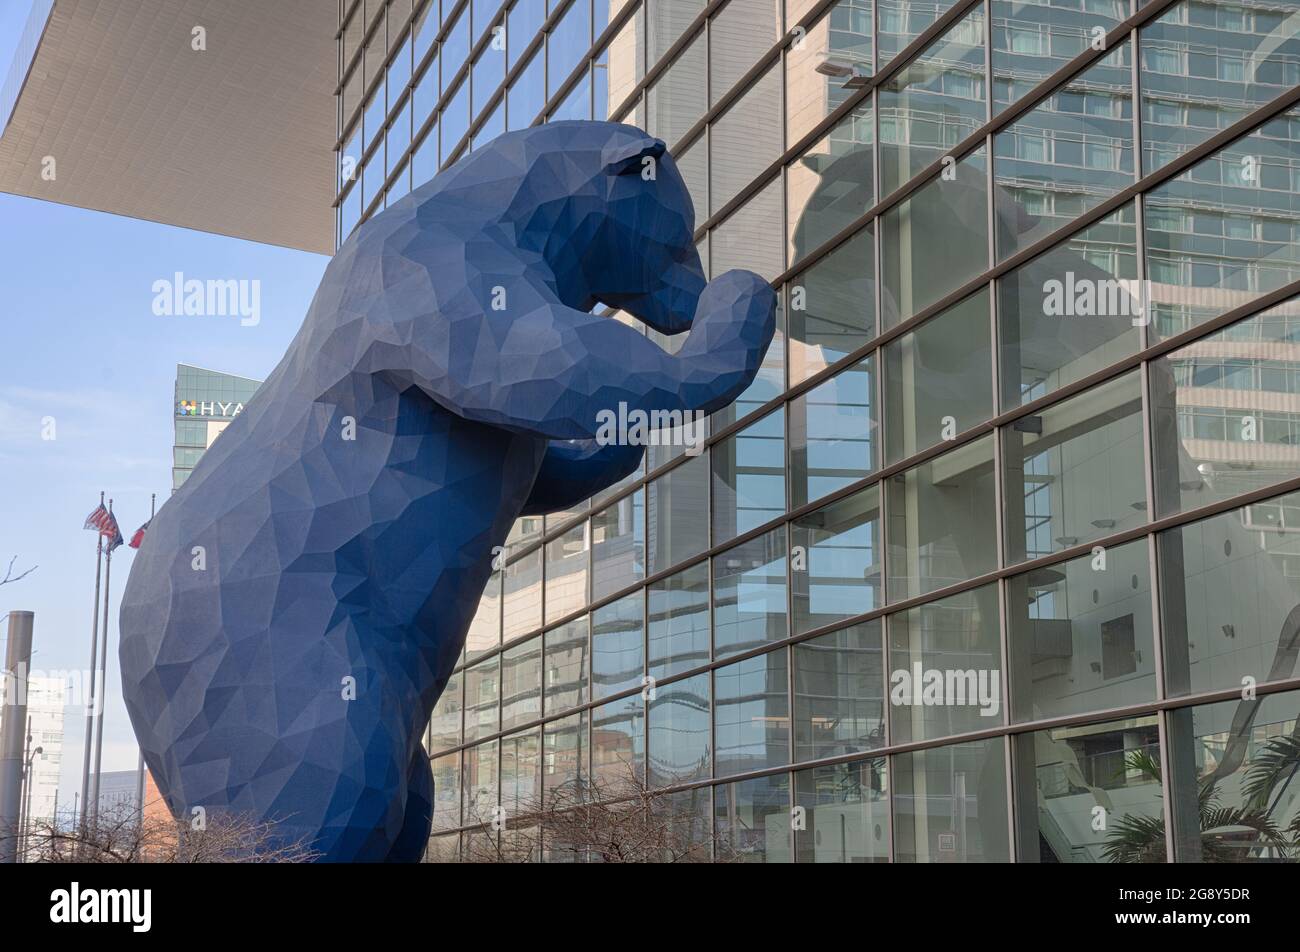 Denver, CO - 7. März 2021: 'I See What You Mean' Skulptur, die 2005 vom Künstler Lawrence Argent geschaffen wurde. Der große Blaue Bär, wie er oft genannt wird, ist der Gipfel Stockfoto